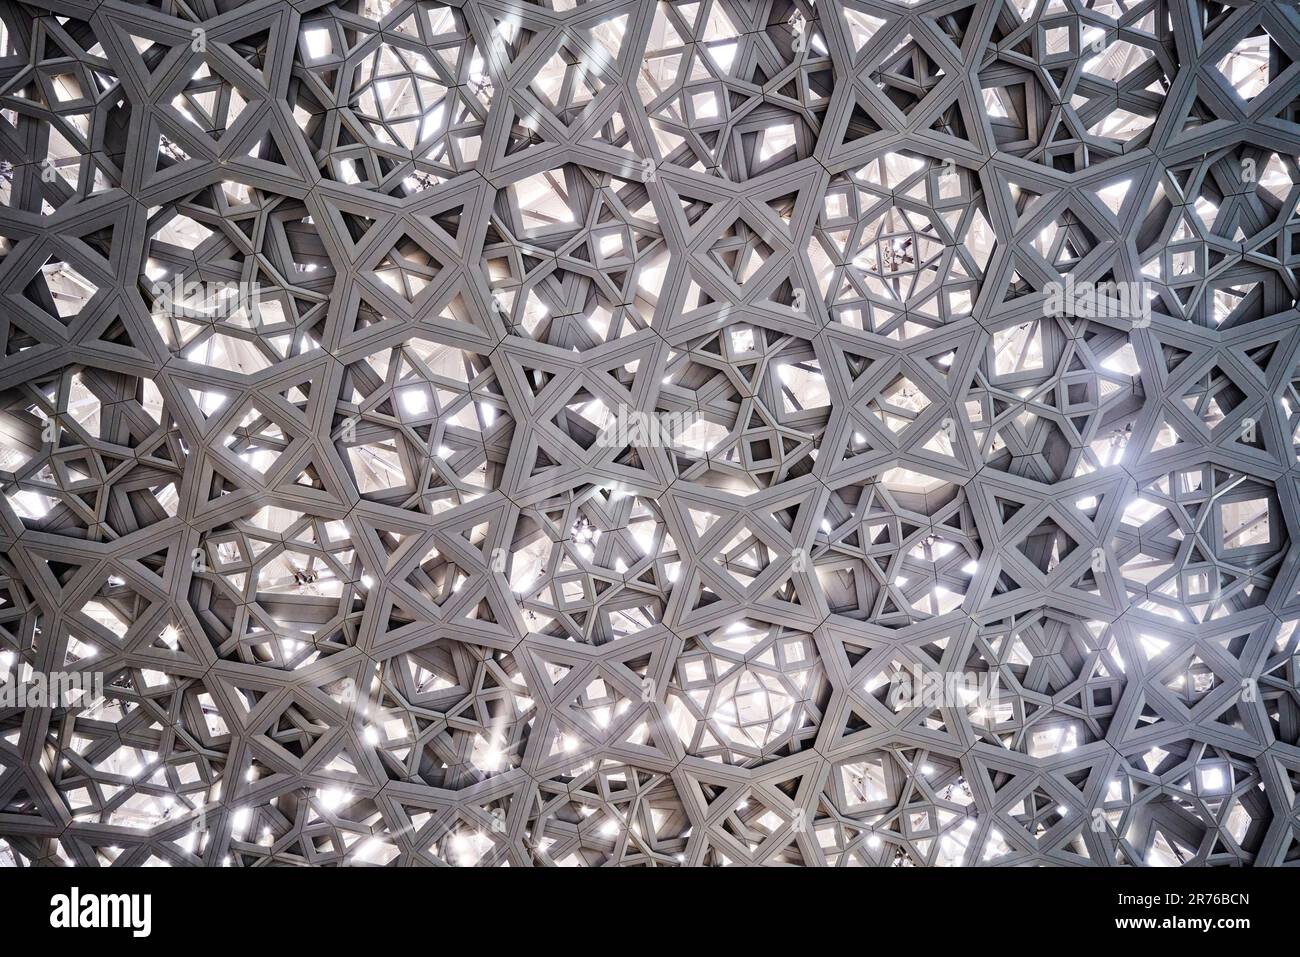 Detailansicht der Netzdecke. Louvre Abu Dhabi, Abu Dhabi, Vereinigte Arabische Emirate. Architekt: Jean Nouvel, 2017. Stockfoto